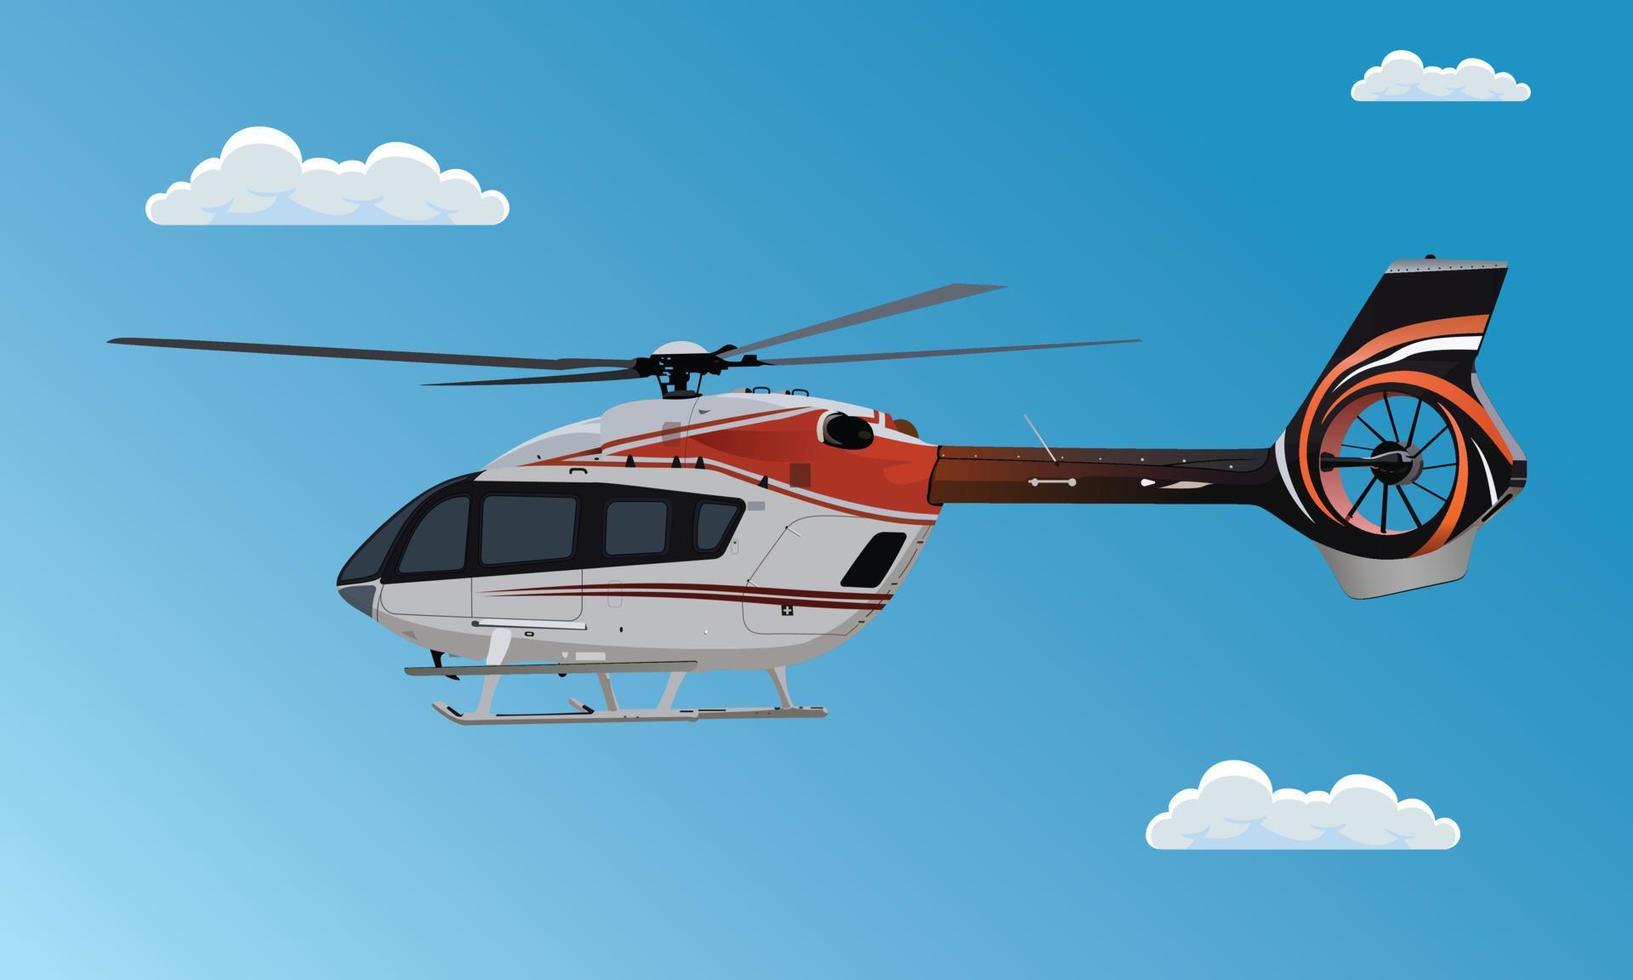 helicóptero volando en el cielo, helicóptero volando en las nubes, transporte aéreo en helicóptero volador. helicóptero privado. ilustración realista de vector plano sobre fondo de cielo azul.